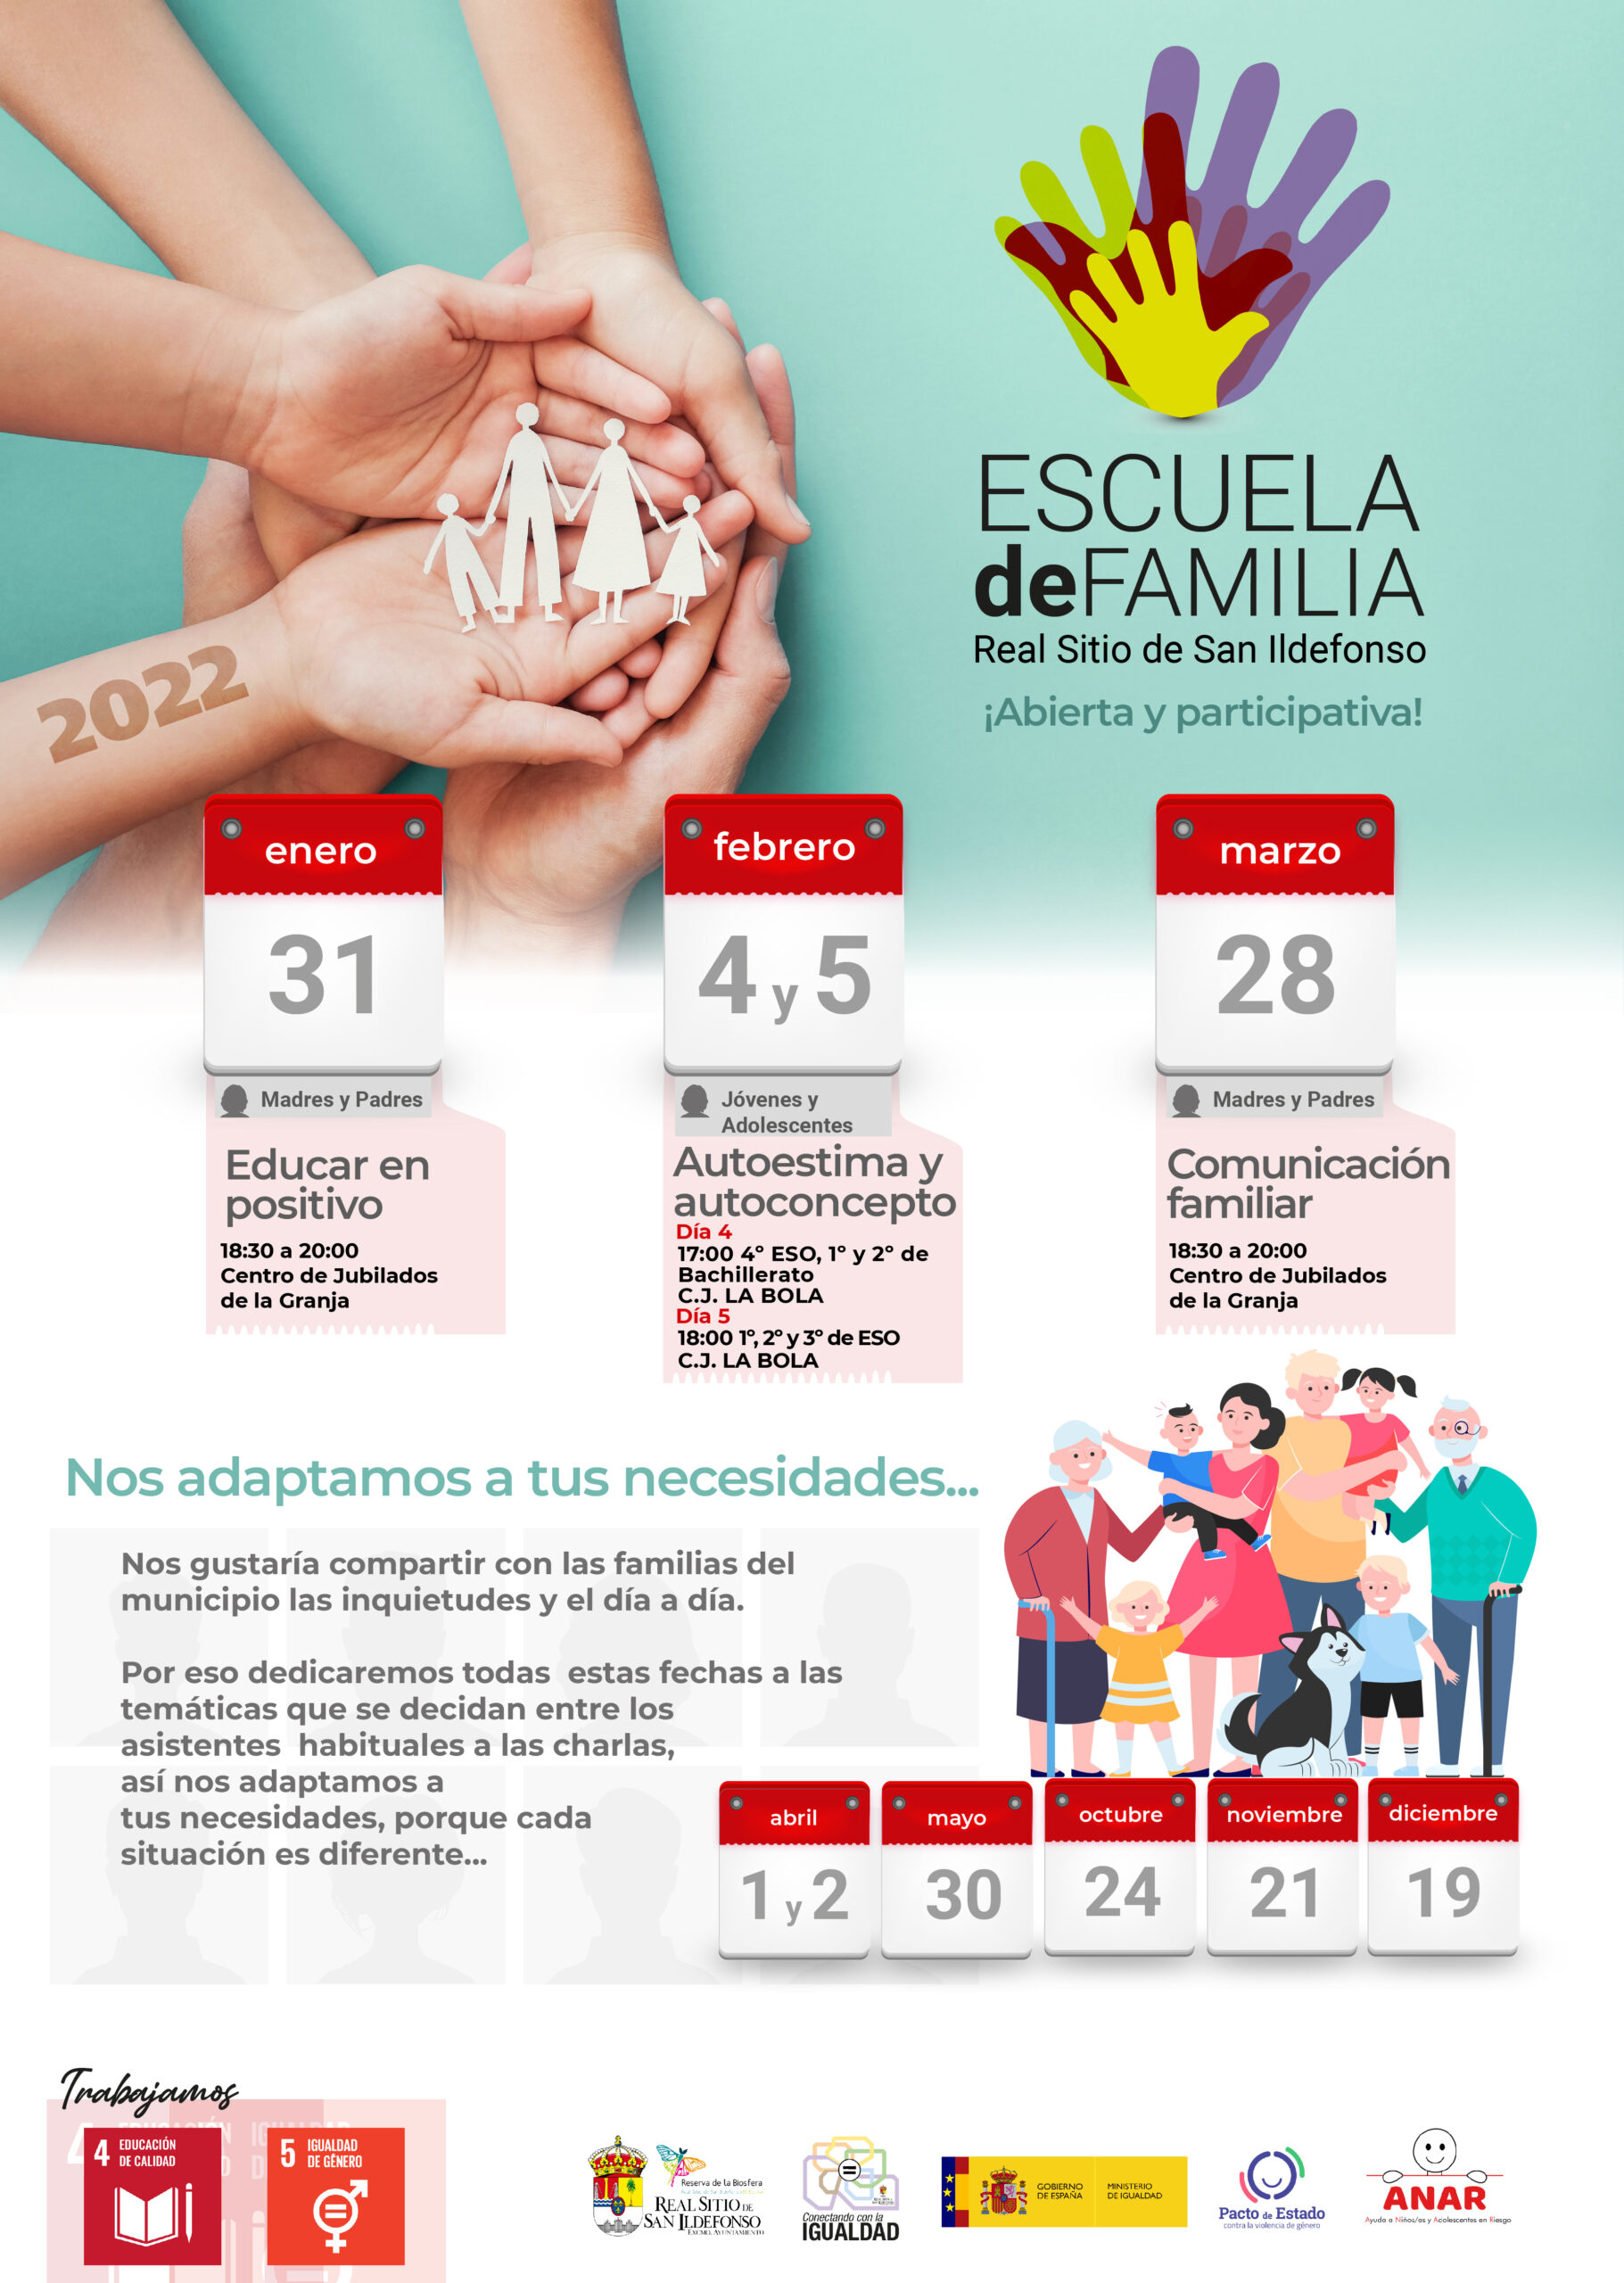 Concluye la segunda edición de Escuela de Familias impartida este 2022 por la Fundación ANAR en Segovia